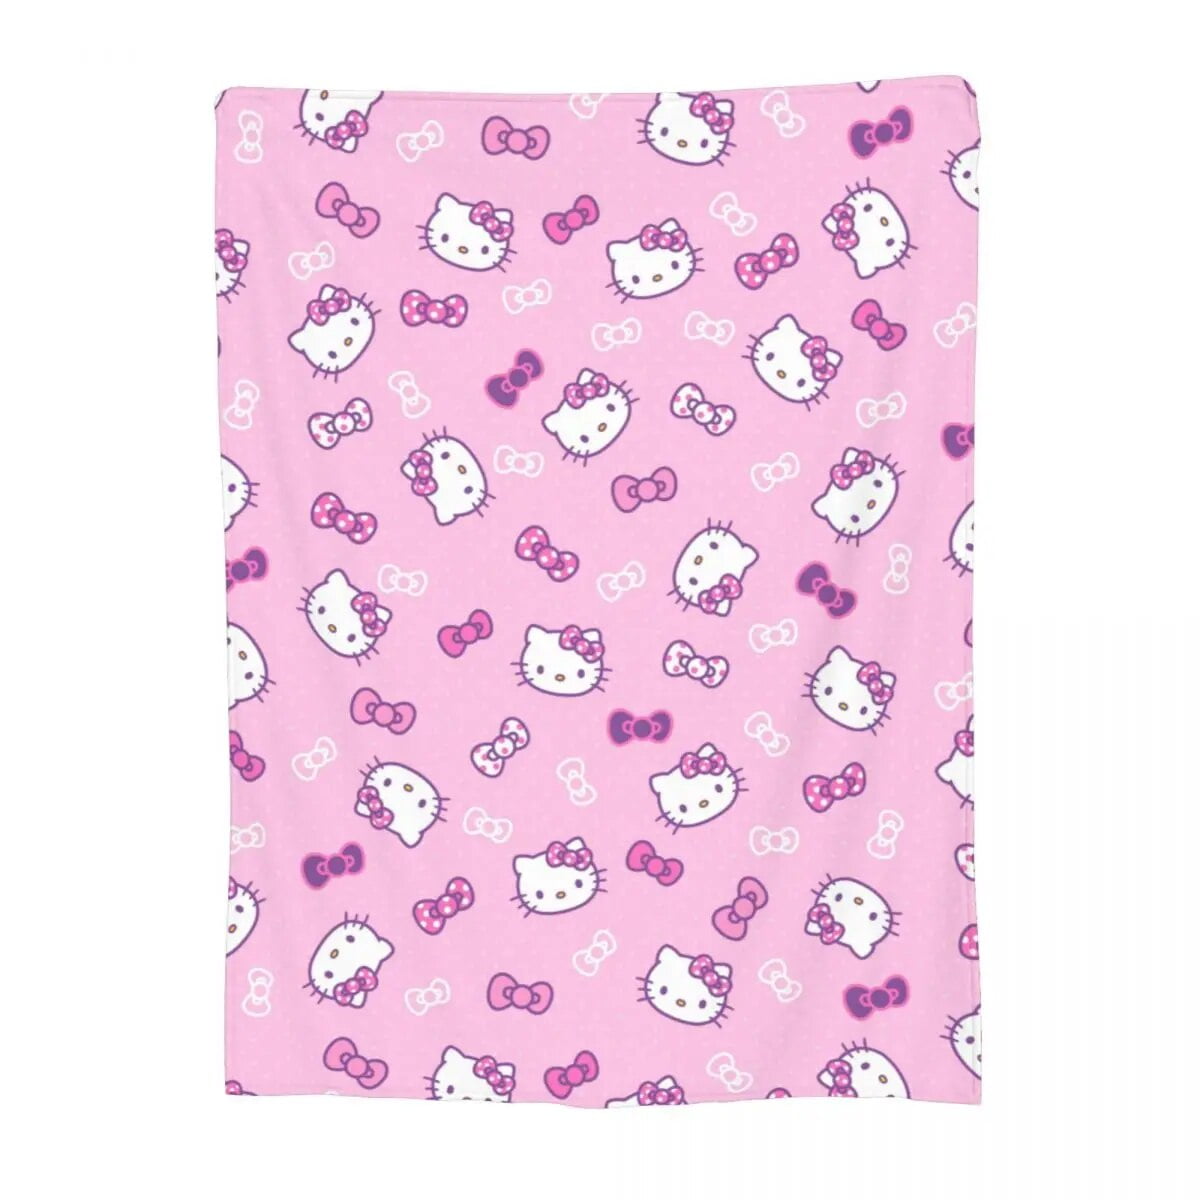 Cute Hello Kitty Throw Blankets Merch For Sofa Ultra Soft Sanrio ...